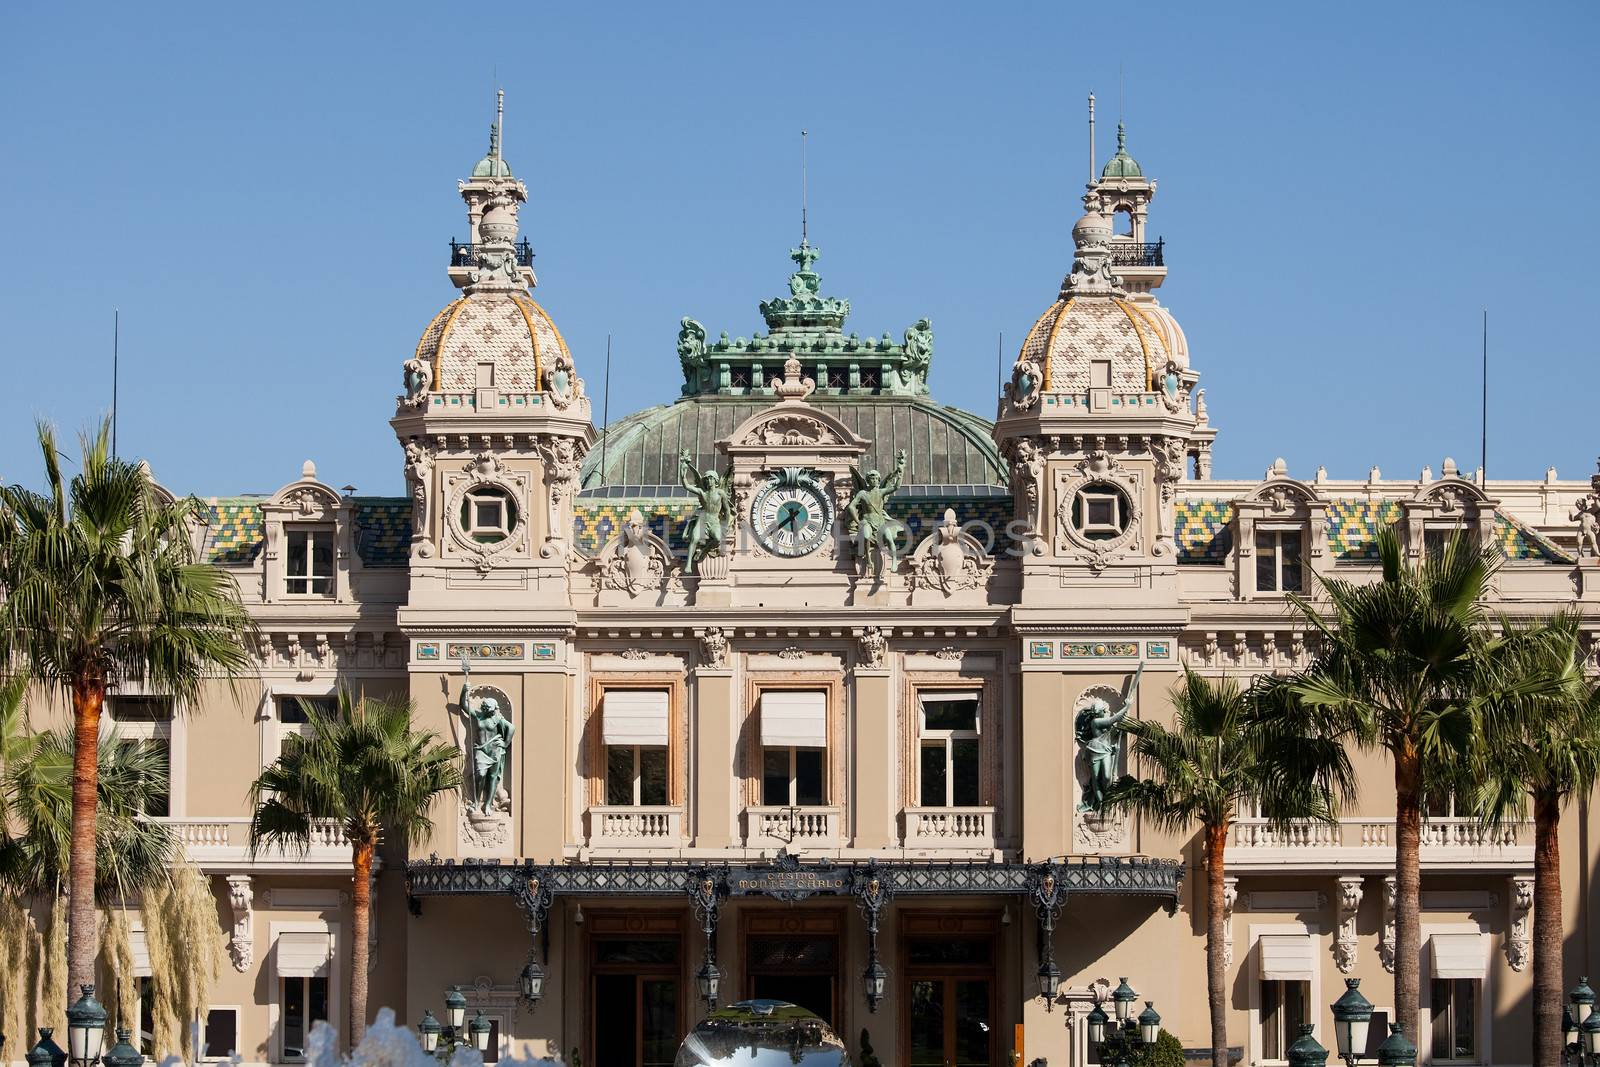 Front entrance of the Grand Casino in Monte Carlo, Monaco